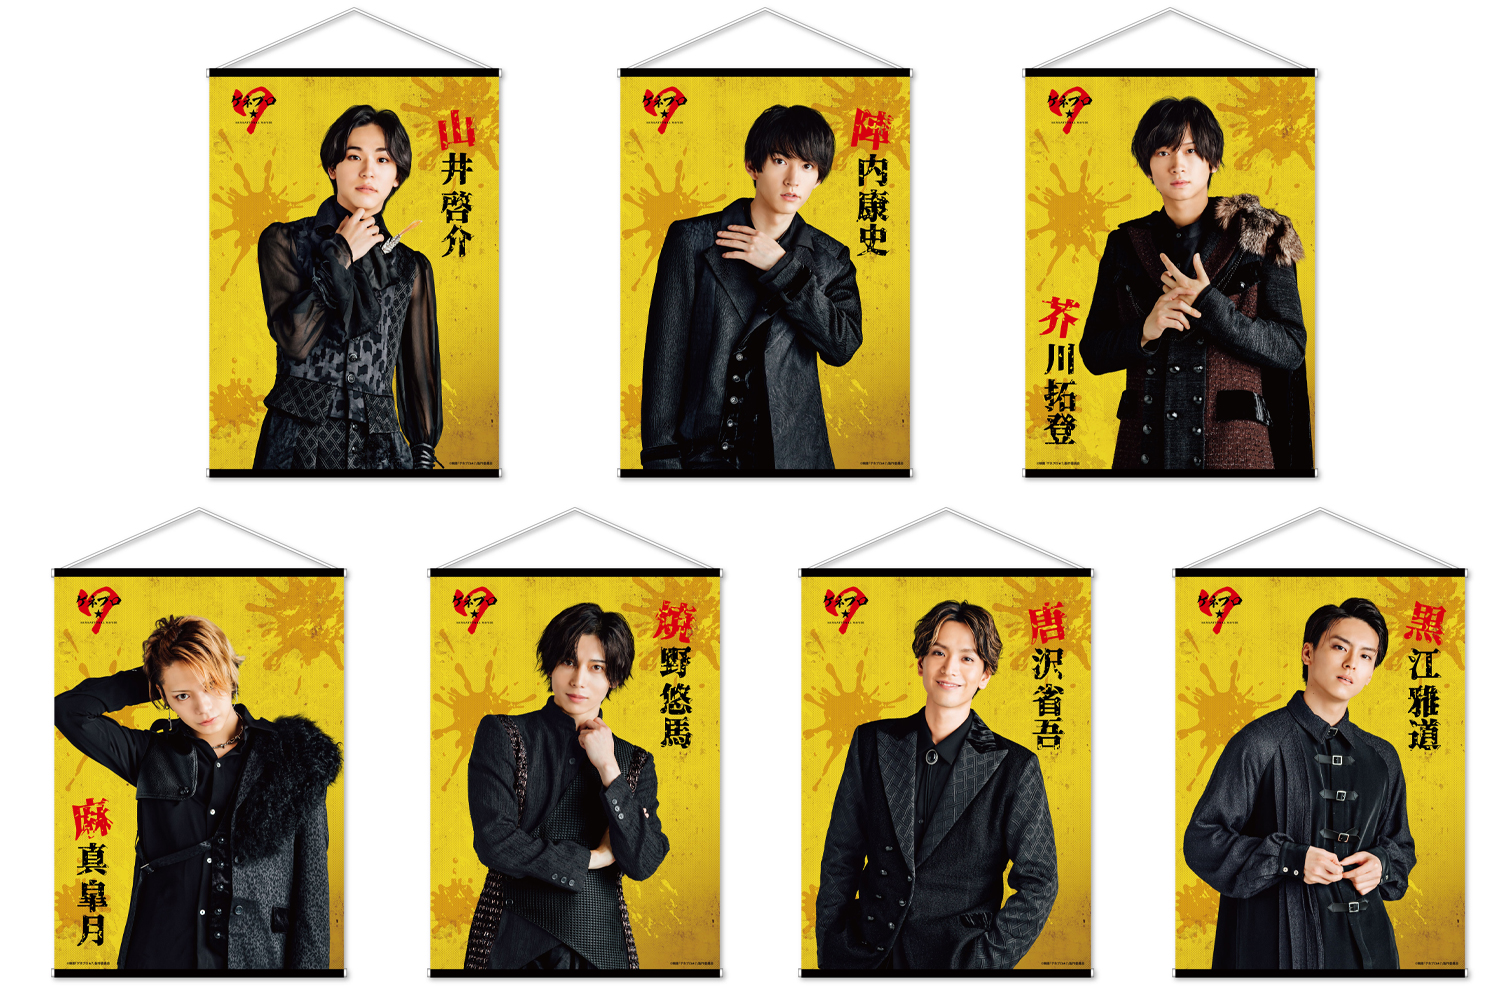 映画『ゲネプロ☆7』 ＠Loppi・HMV限定「B2タペストリー（全7種）」|グッズ